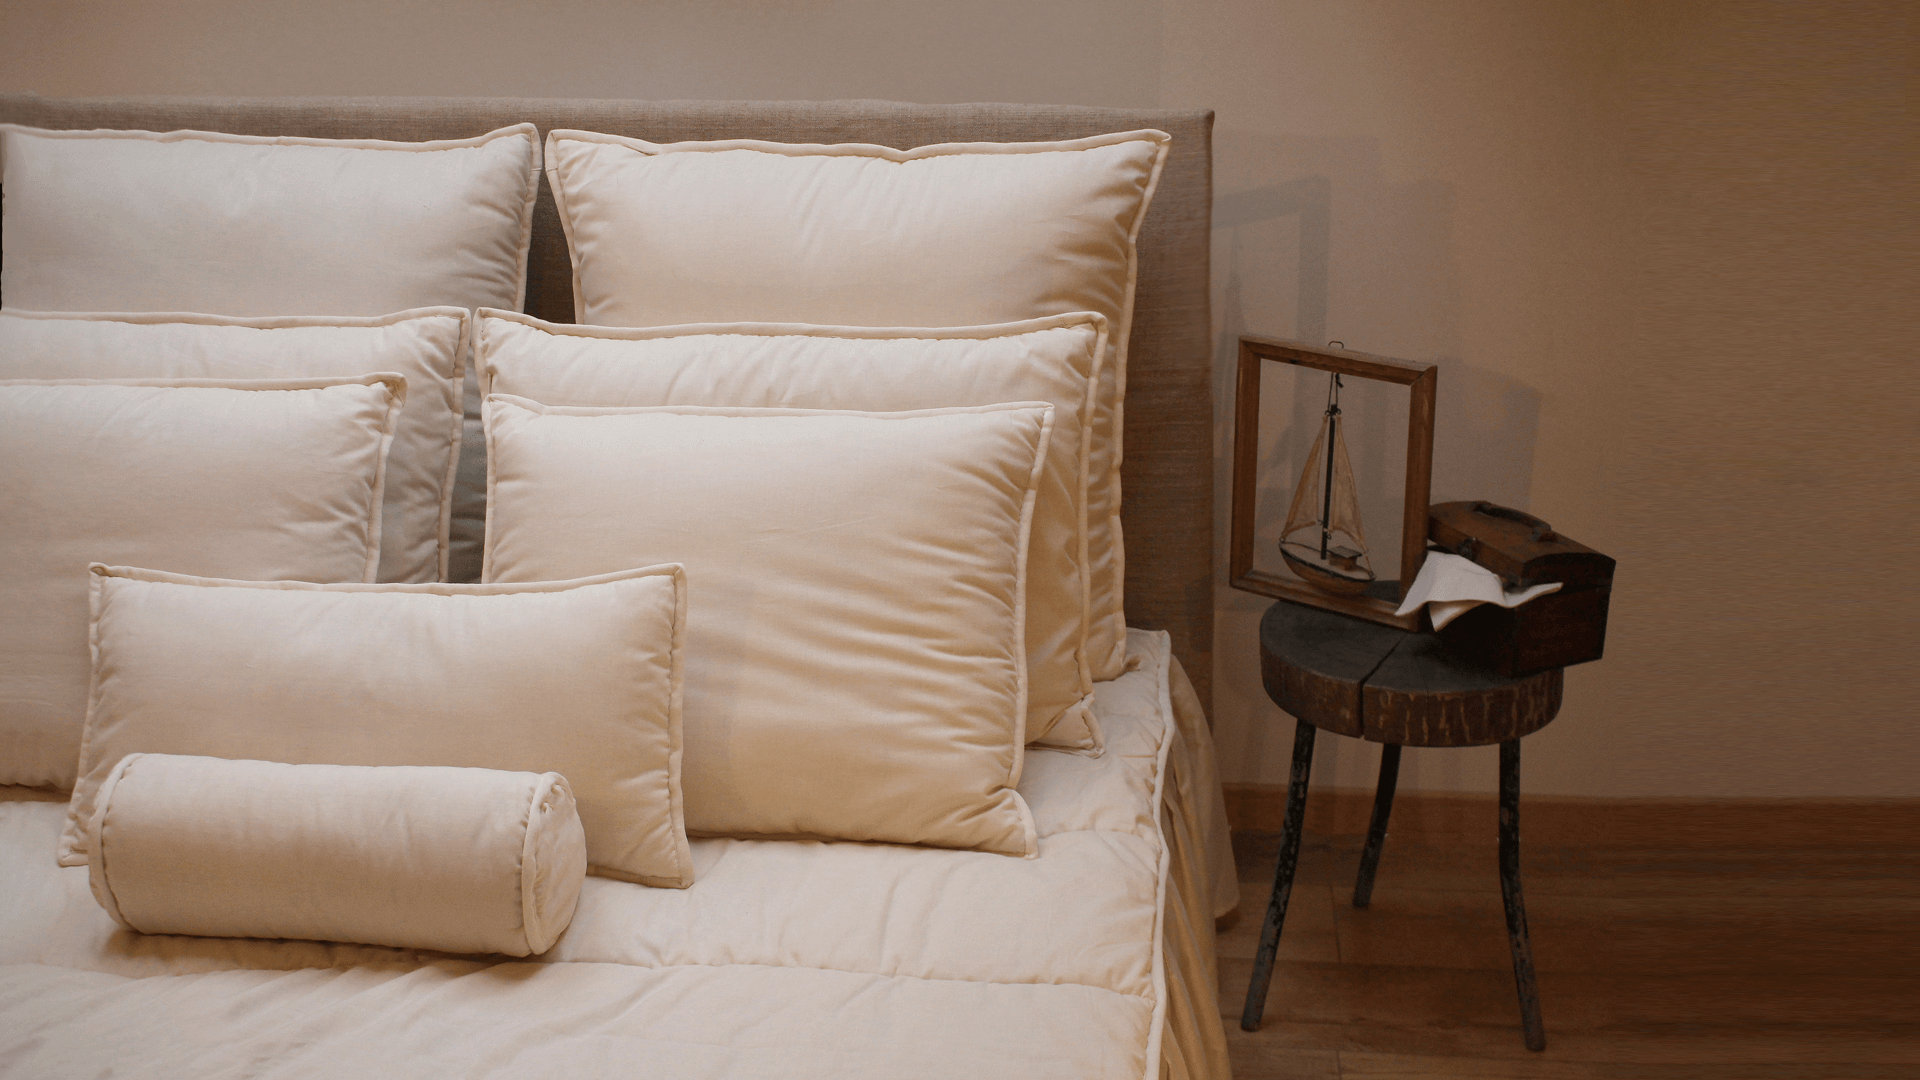 bedroom goals decorations pillows2